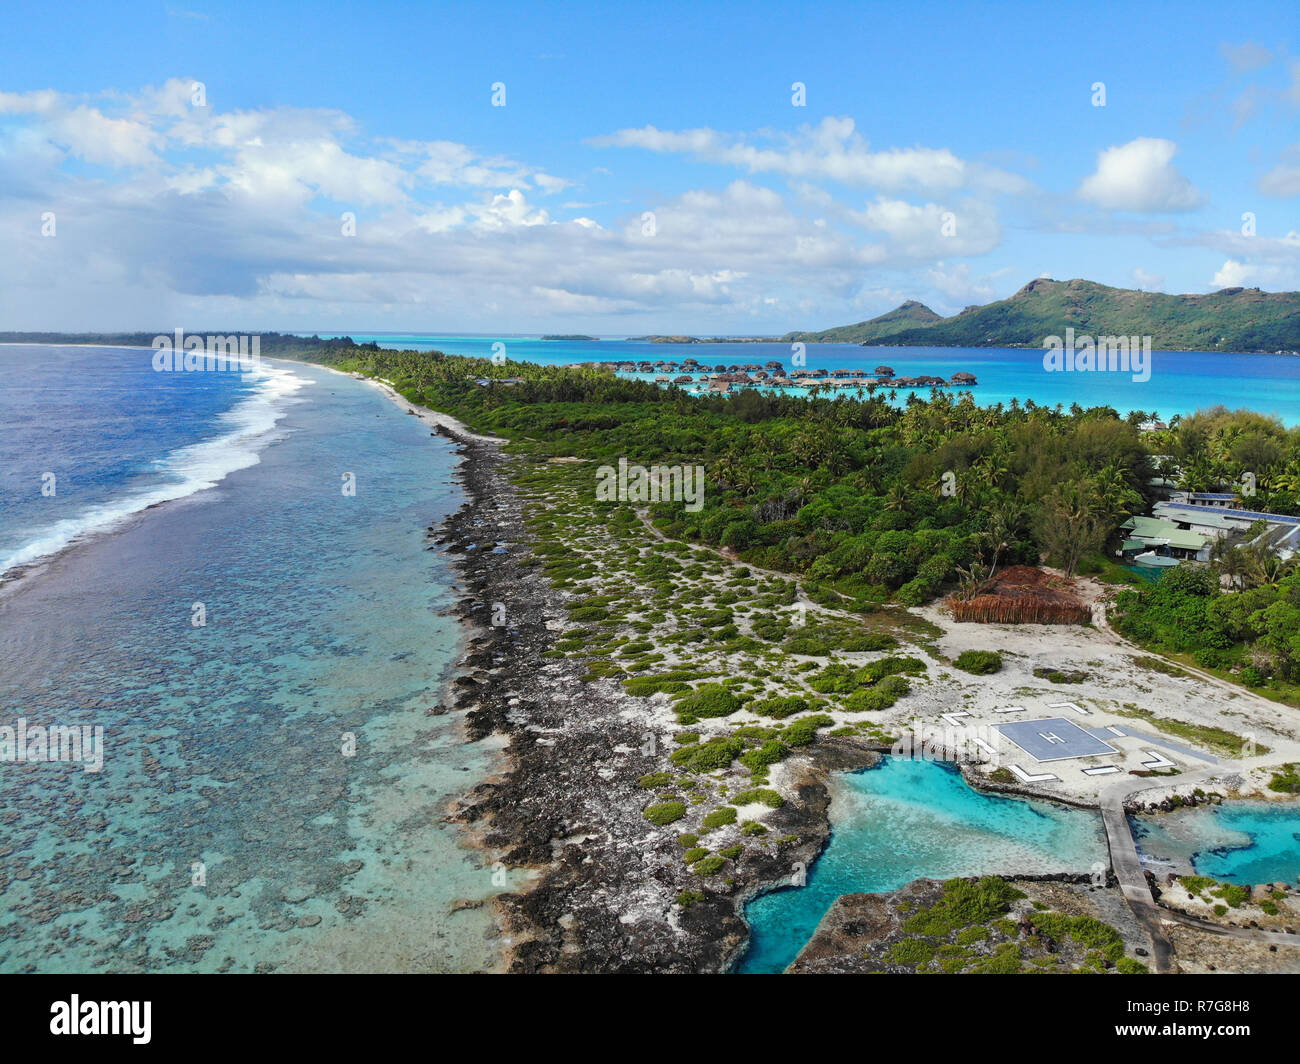 Antenna paesaggio panoramico vista dell'isola di Bora Bora nella Polinesia francese con il Monte Otemanu montagna circondata da una laguna turchese, motu un Foto Stock